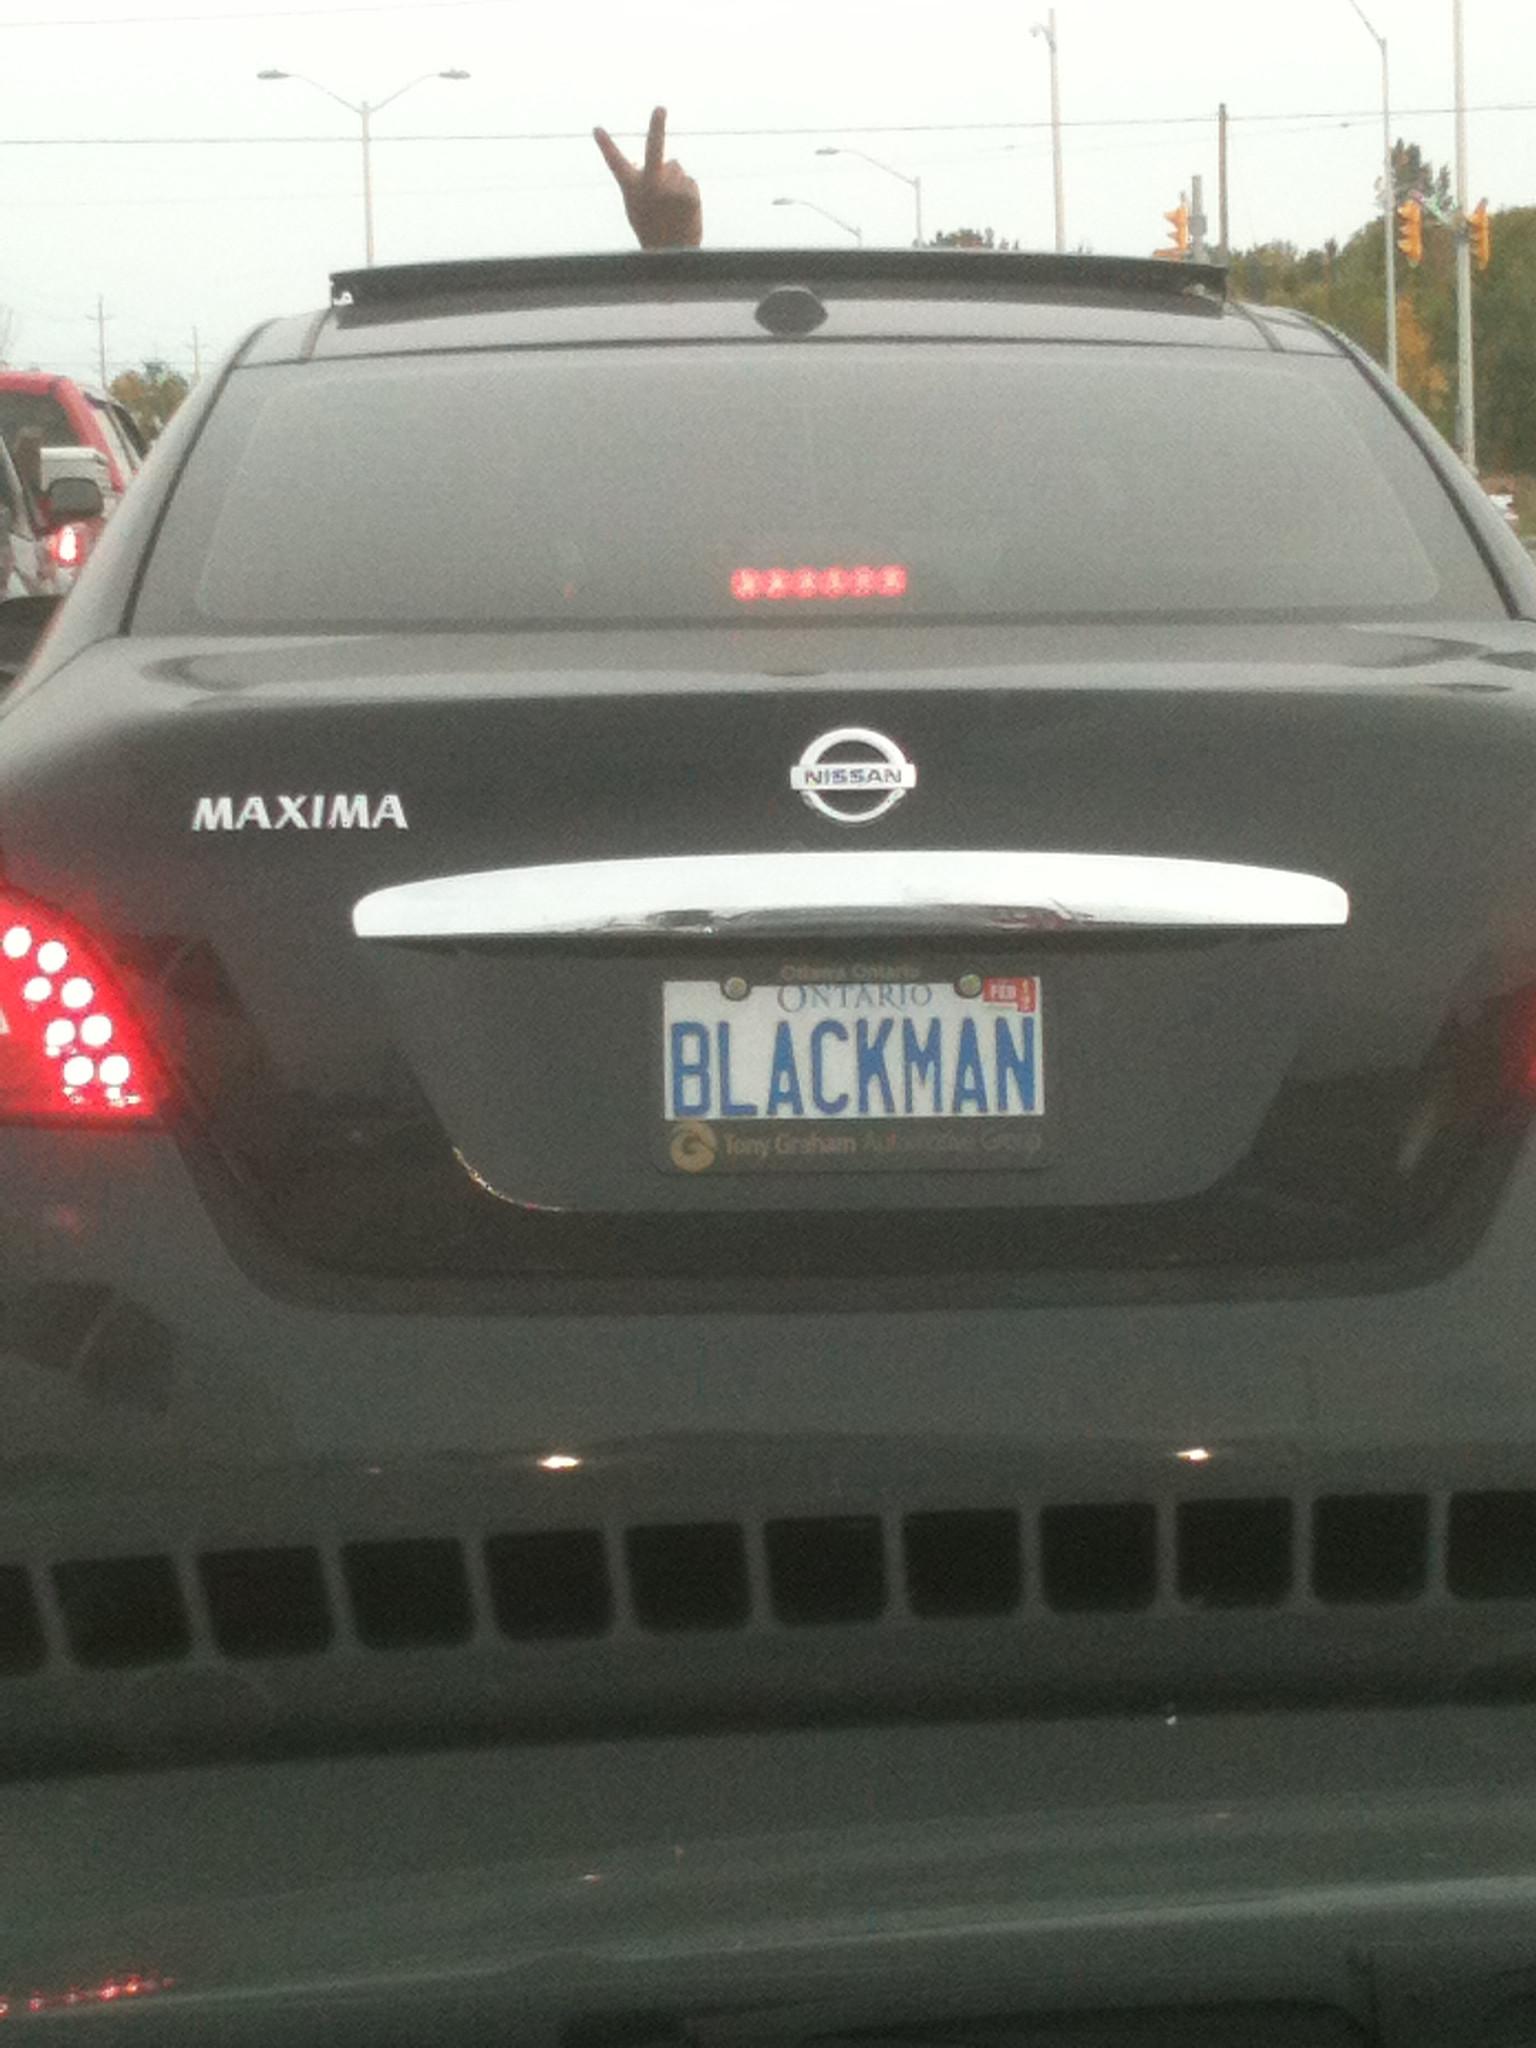 funny car plates - Nissan Maxima O Ontario De Blackman Tomy Grahan be